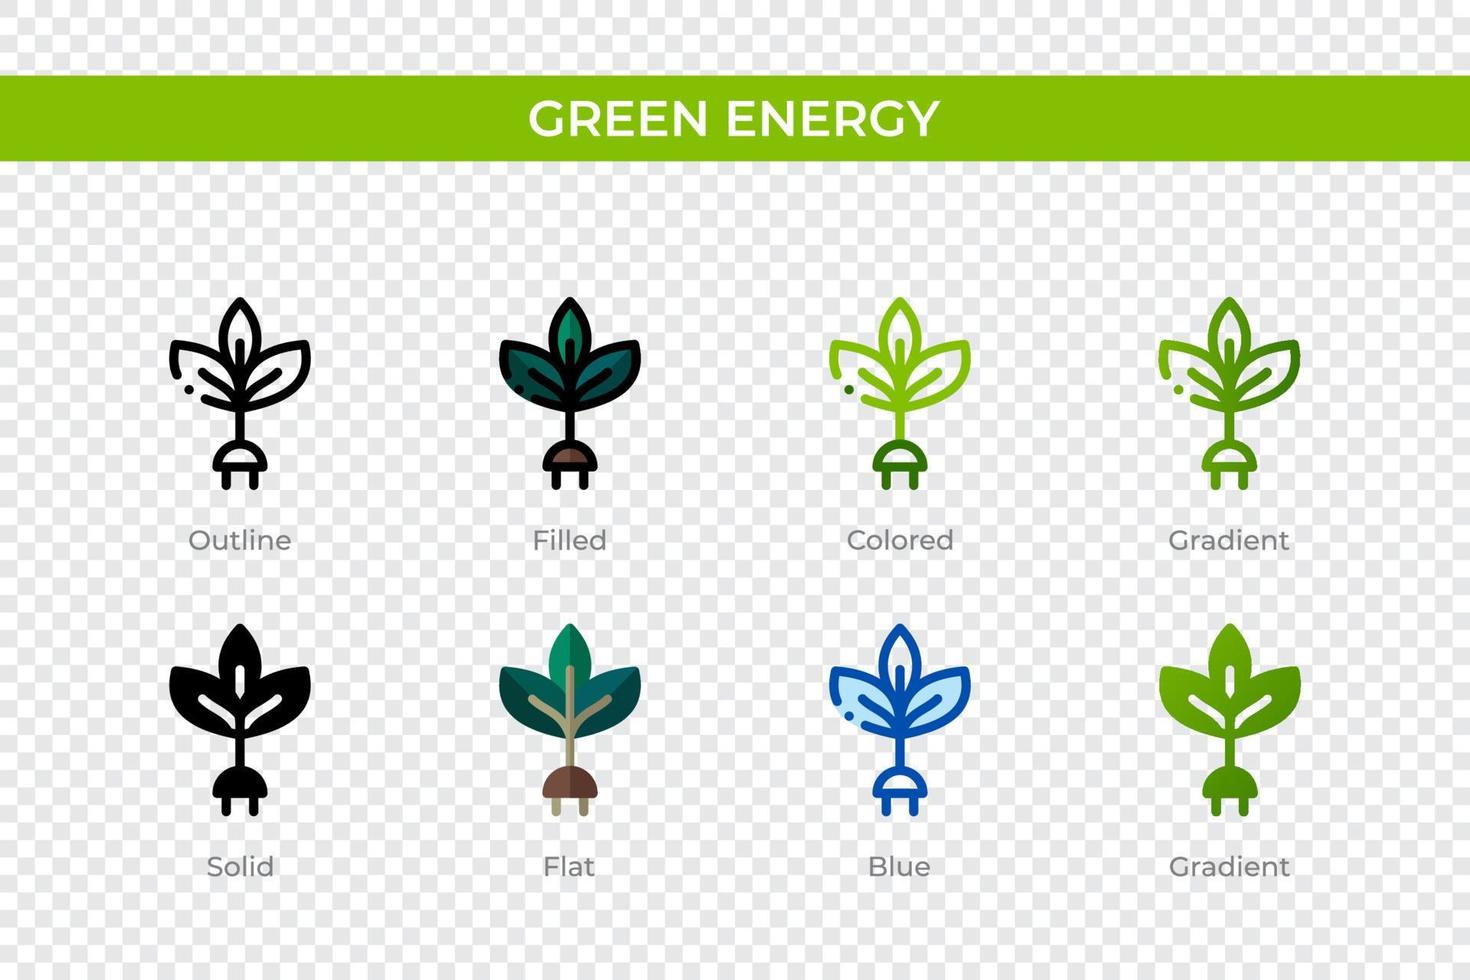 icona di energia verde in stile diverso. icone vettoriali di energia verde progettate in stile contorno, solido, colorato, pieno, sfumato e piatto. simbolo, illustrazione del logo. illustrazione vettoriale